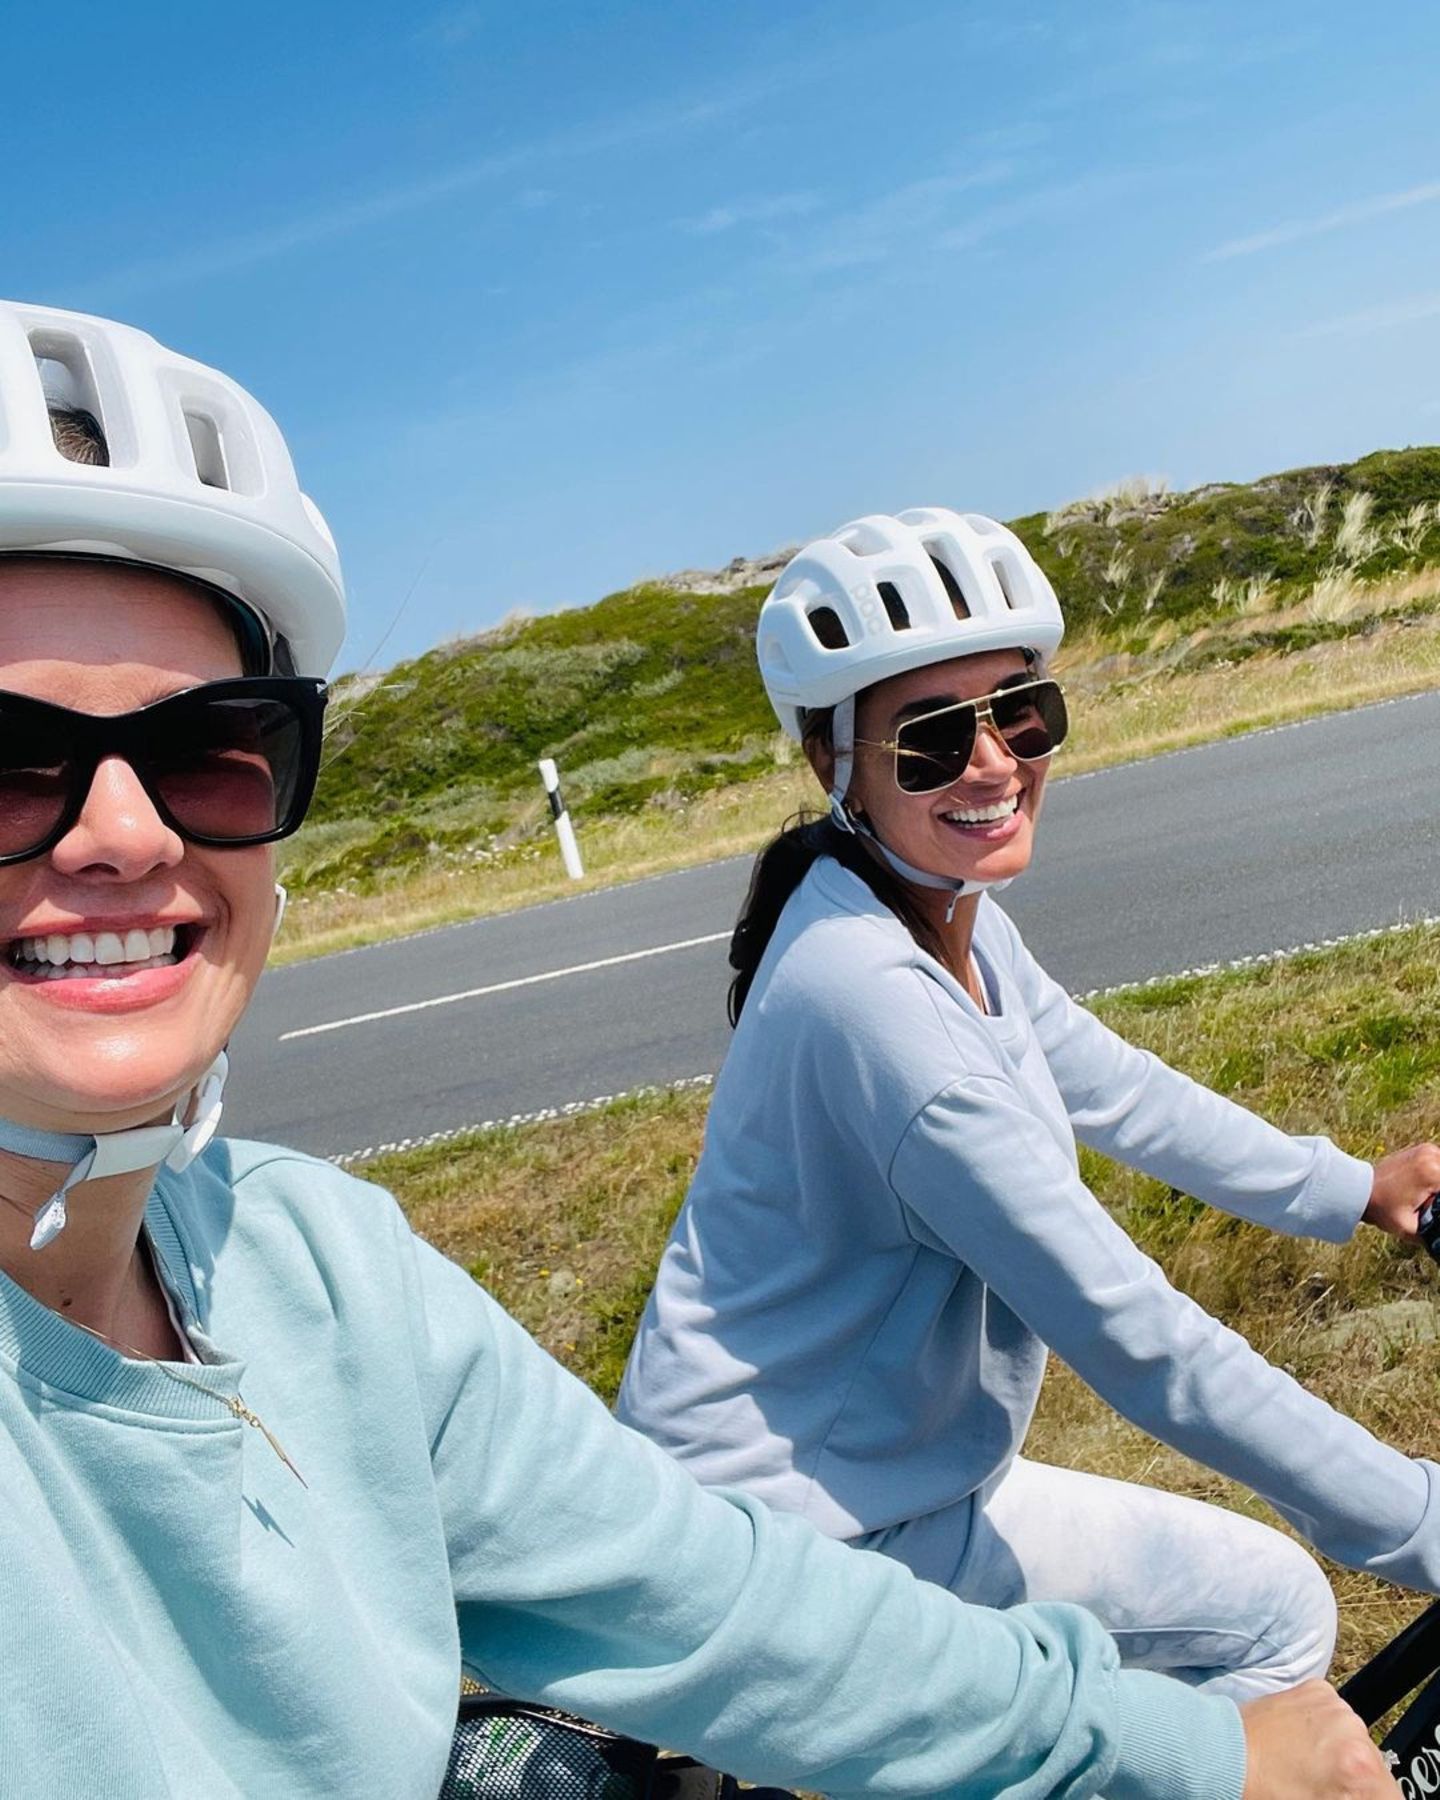 Die Freundinnen Monica Meier-Ivancan und Jana Ina Zarrella erholen sich bei ihrem gemeinsamen "Girls-Trip" auf Sylt. Neben Faulenzen im Strandkorb und einem ausgedehnten Spaziergang am Meer gehört auch eine Radtour über die schöne Insel zum Programm.